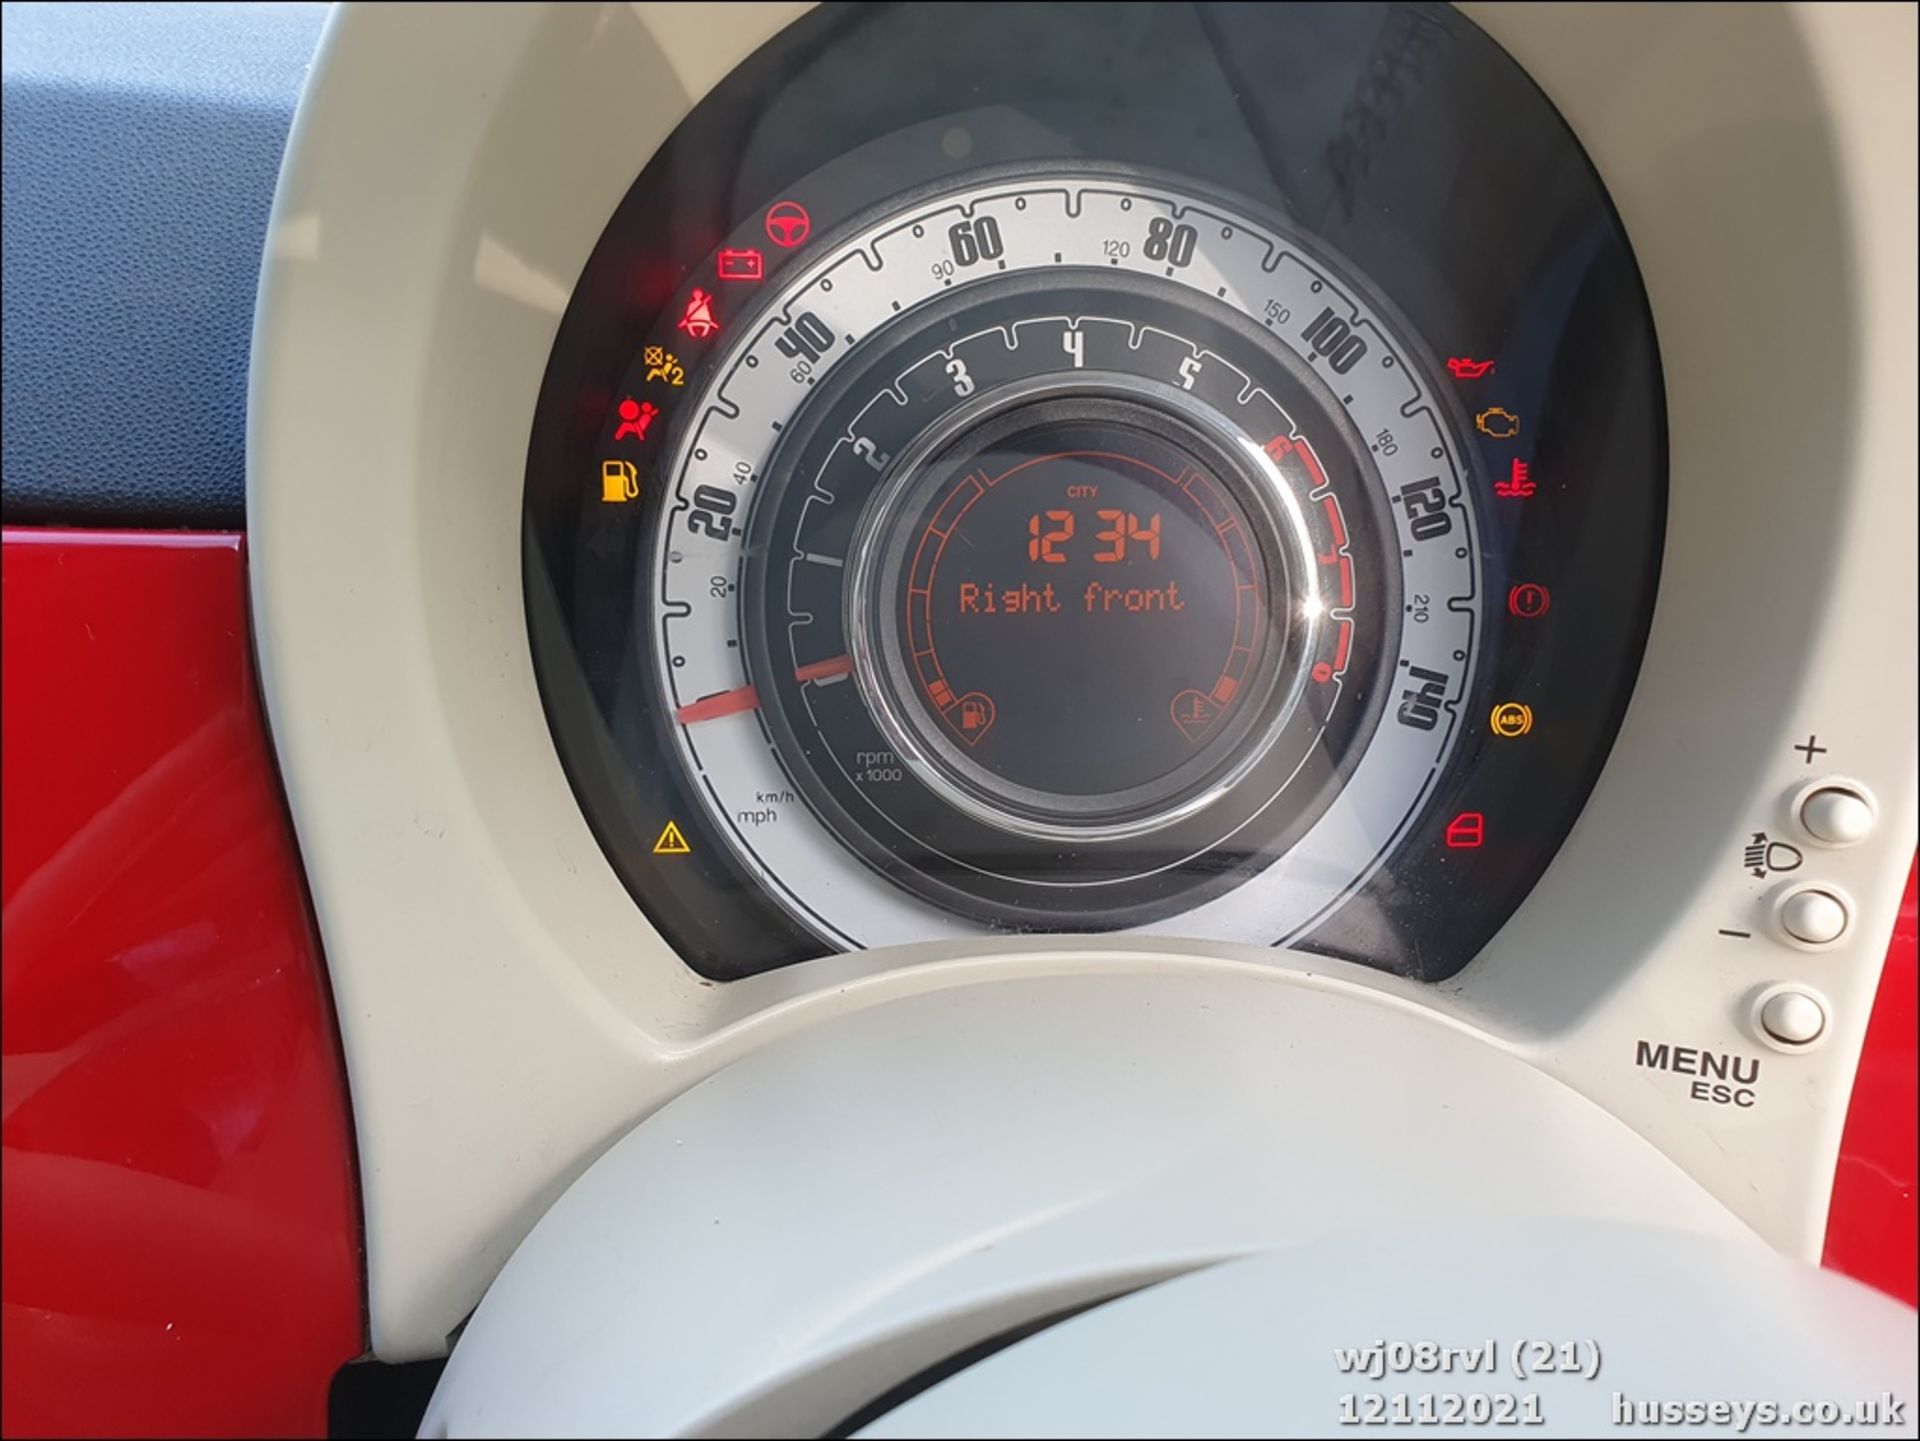 08/08 FIAT 500 POP RHD - 1242cc 3dr Hatchback (Red, 115k) - Image 21 of 25